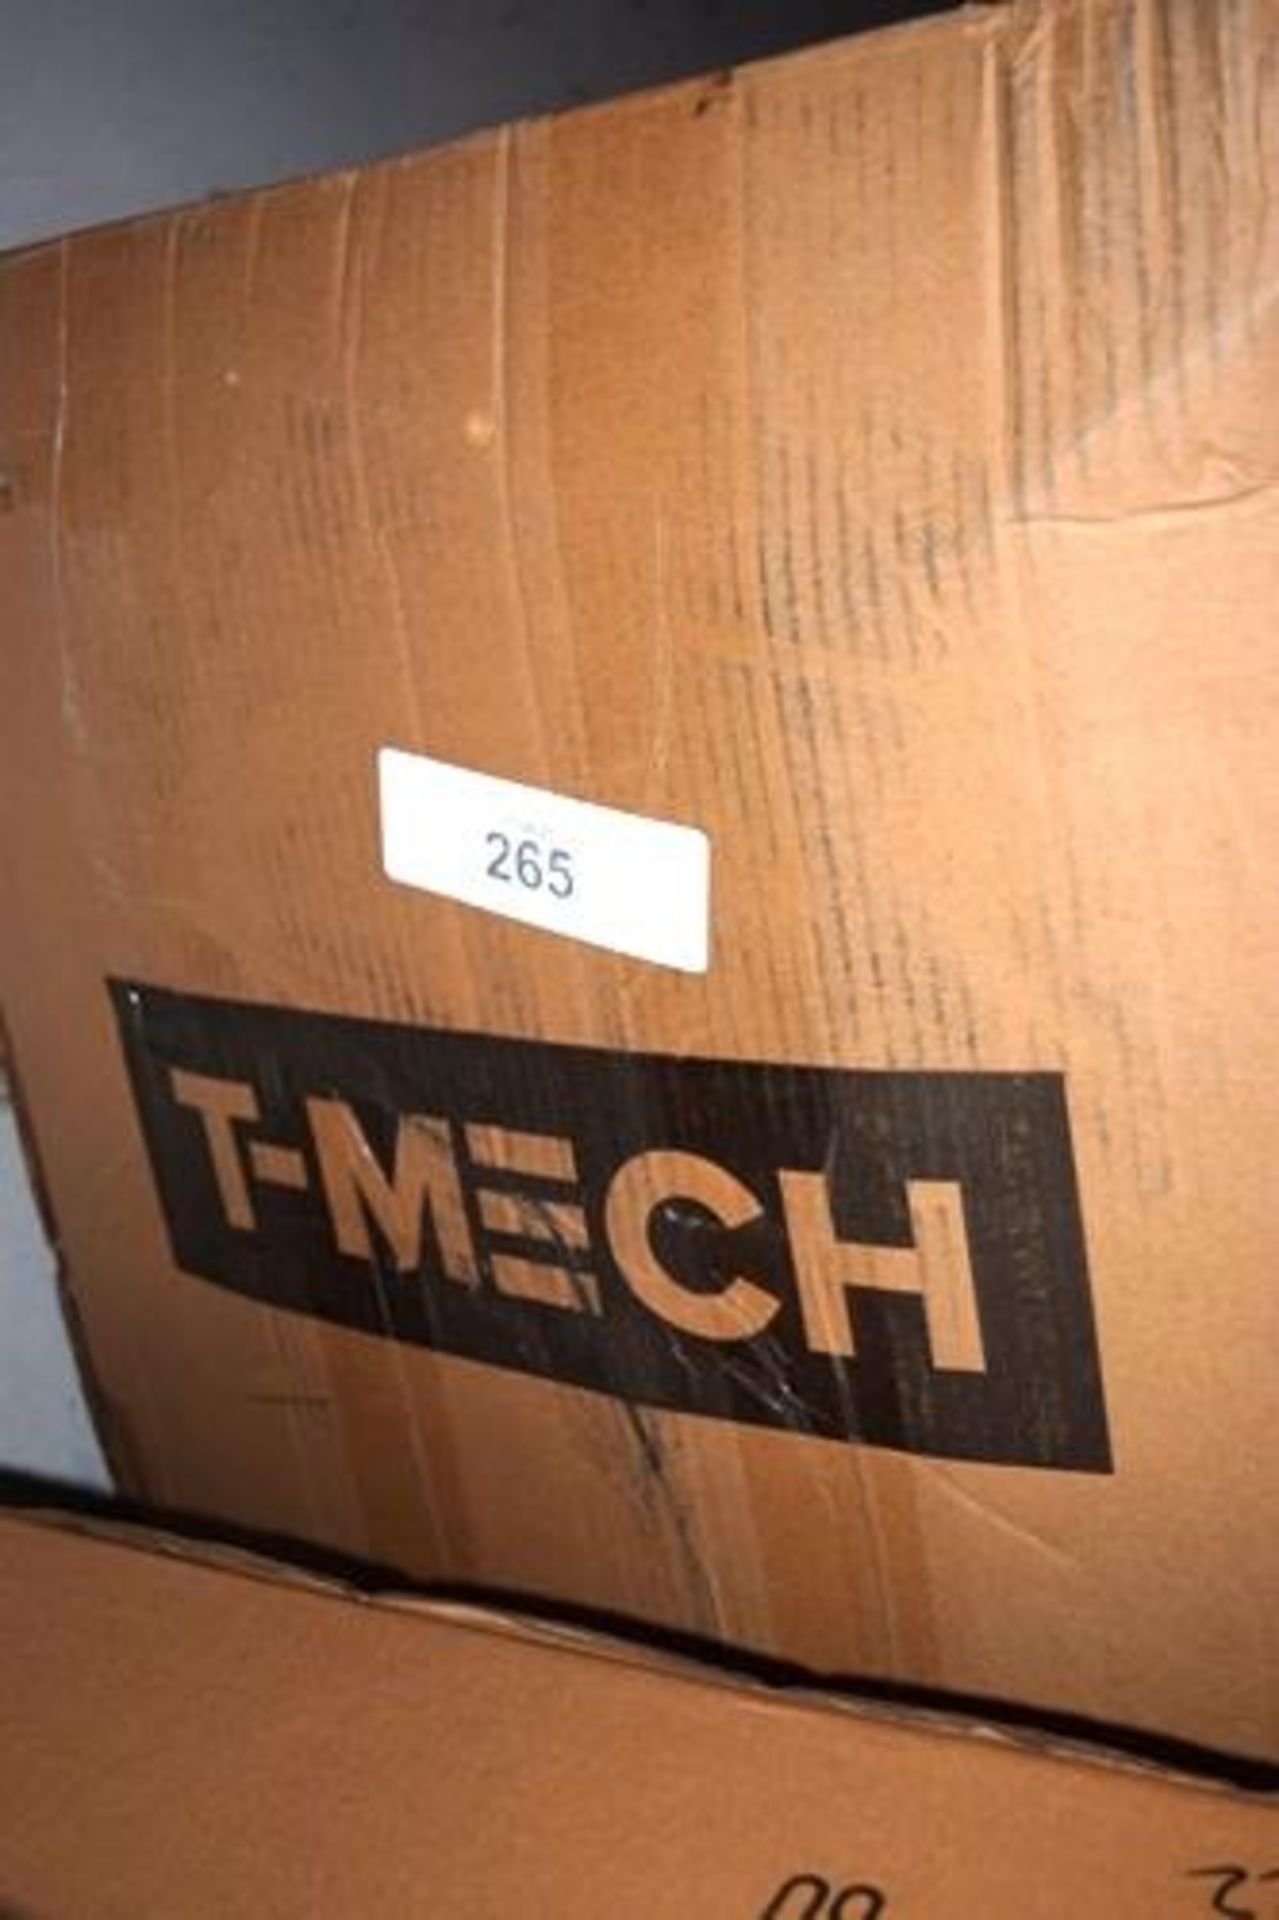 T-Mech mini garden tiller with 2-stroke petrol engine, model 52CCGT - New (GS27)